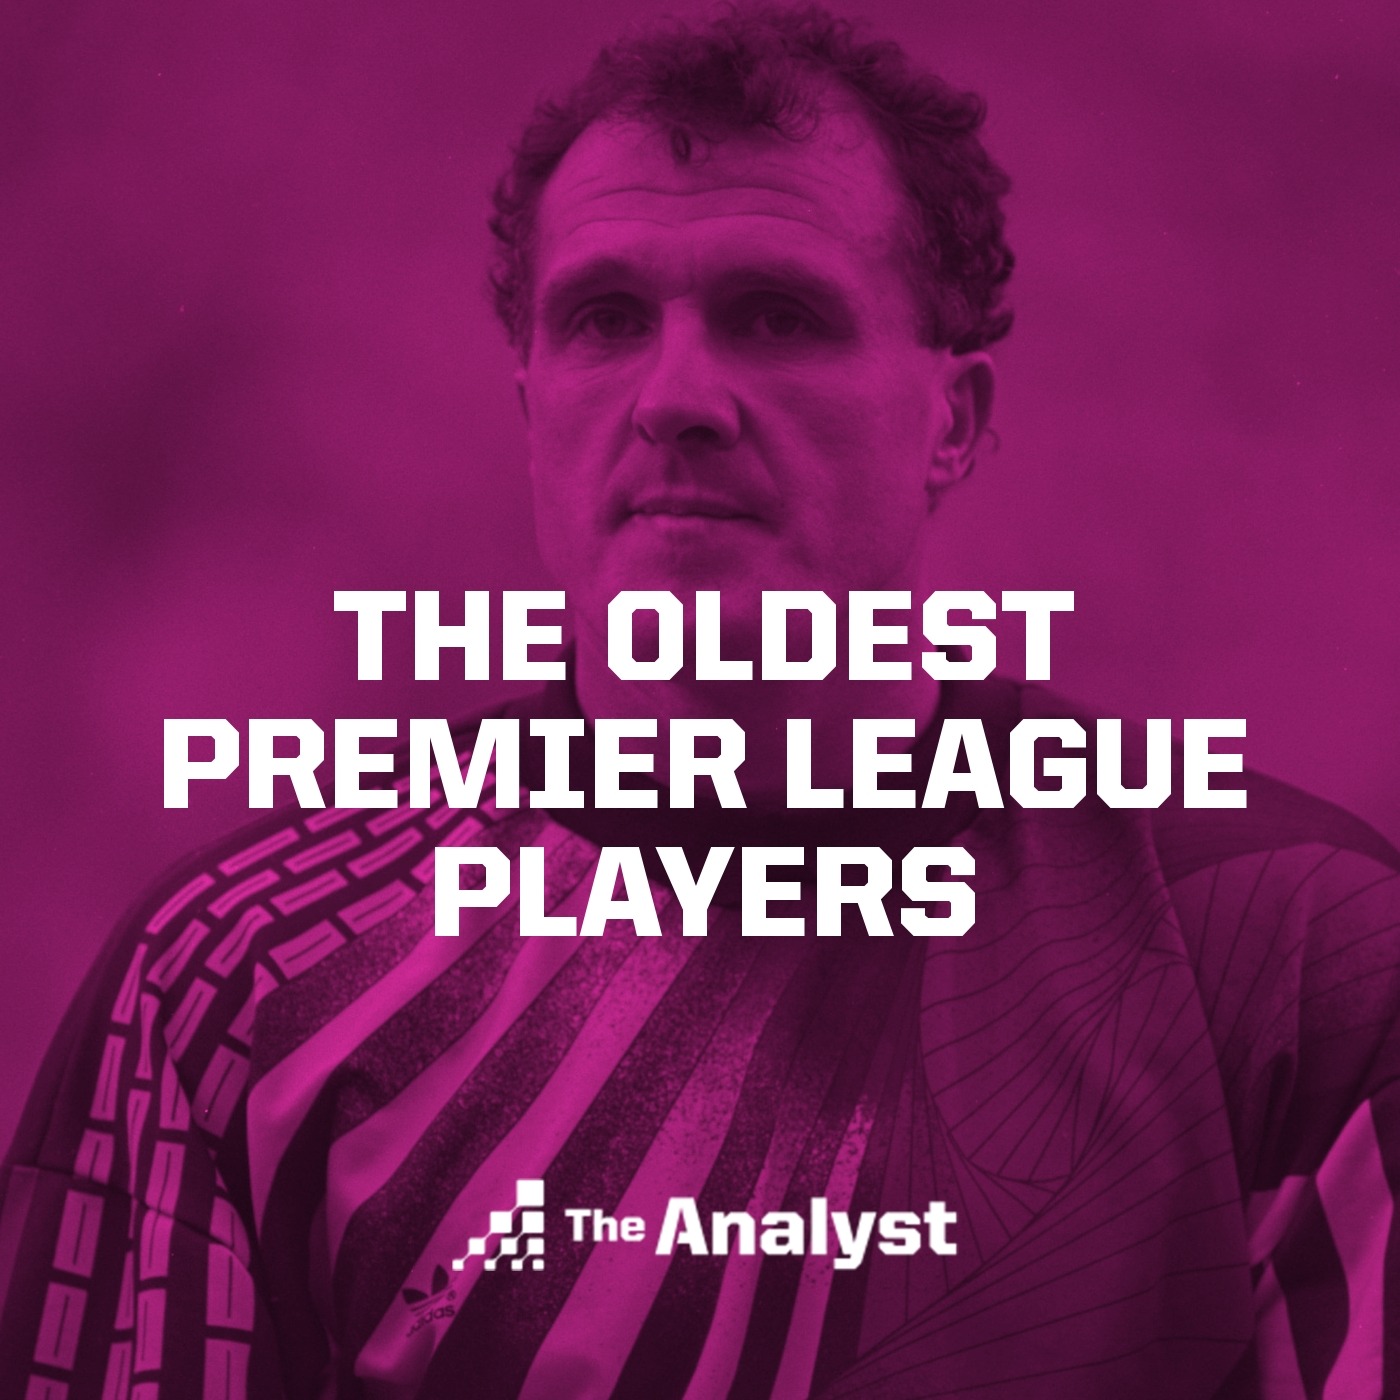 The Oldest Premier League Players